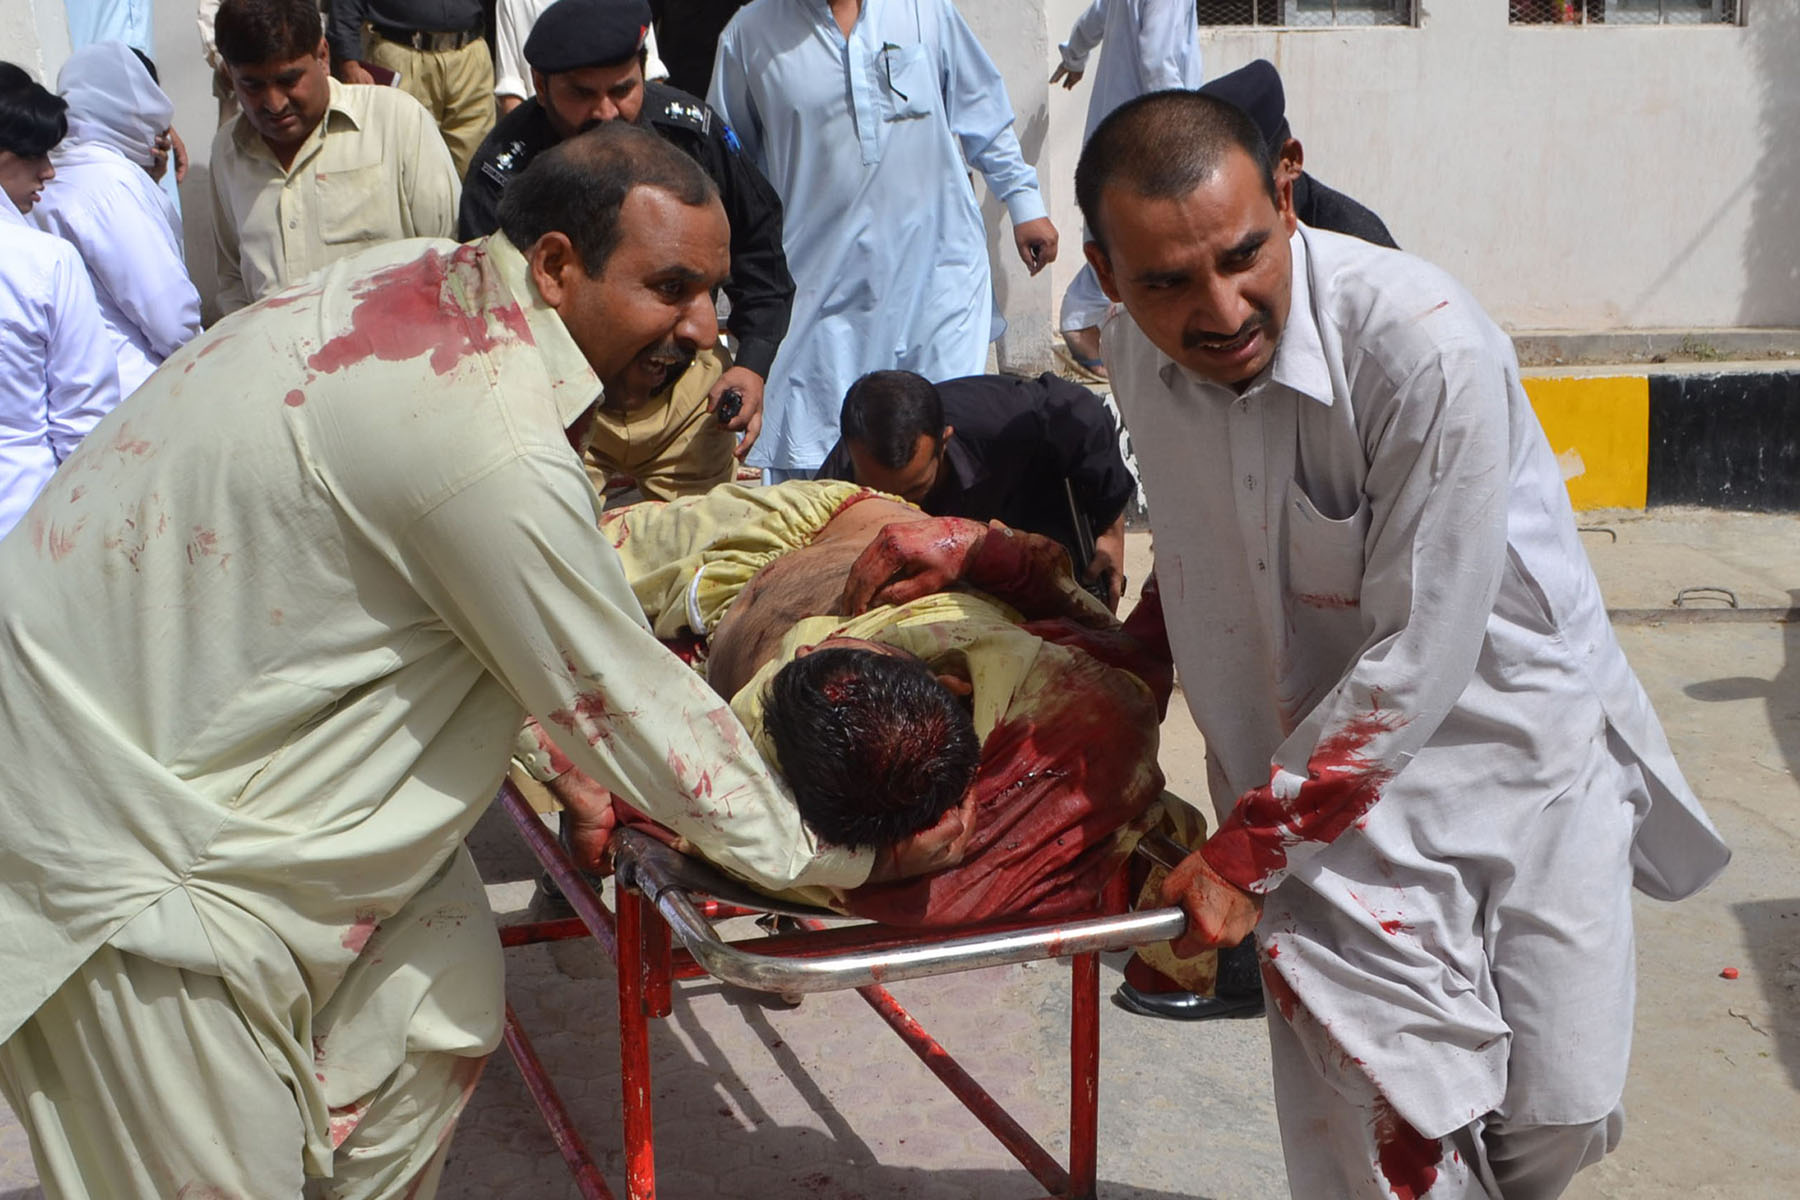 Un atentado suicida durante el funeral de un policía en Pakistan deja 38 muertos y 50 heridos